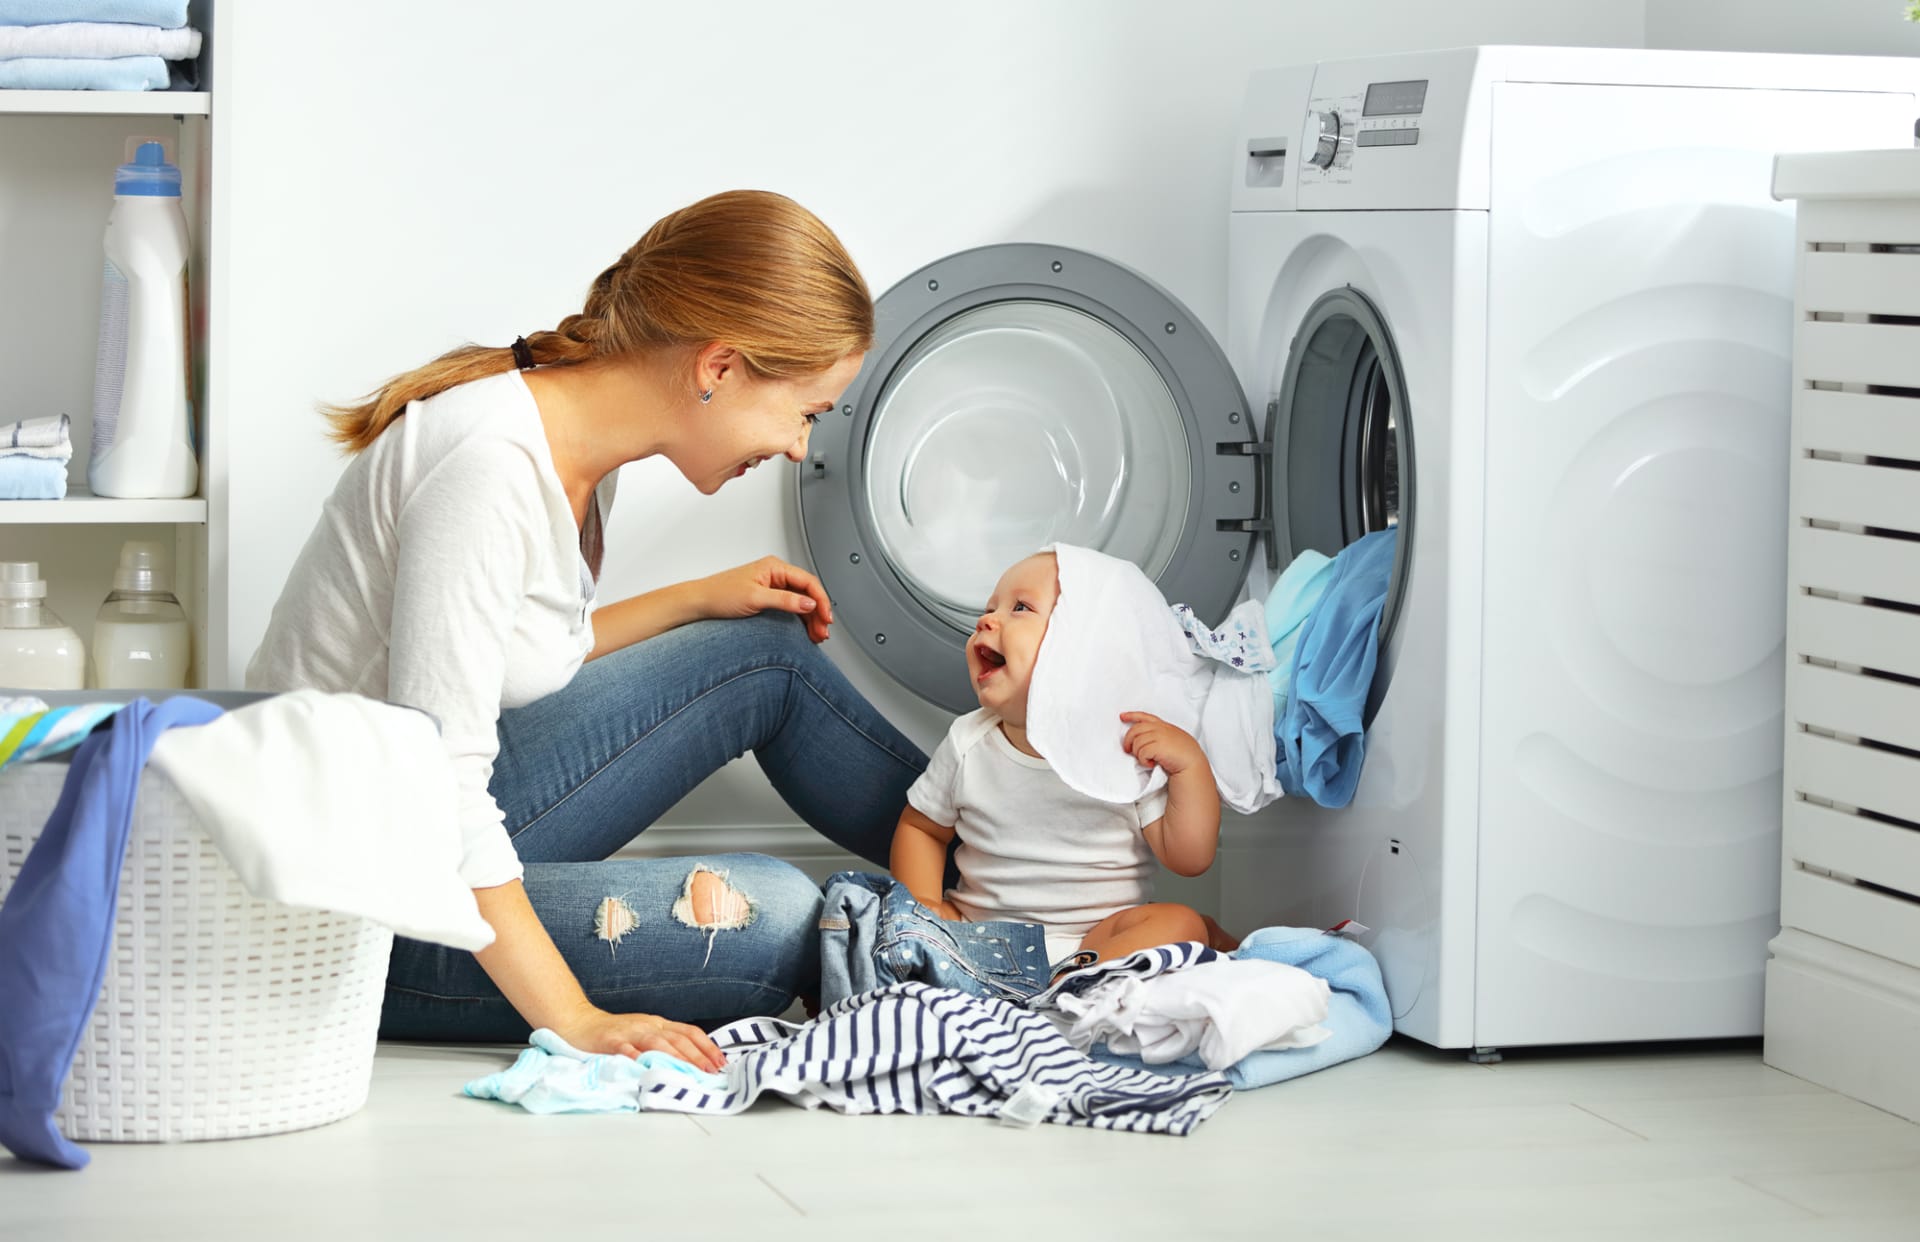 Pokud chcete mít krásně voňavé prádlo, udržujte svou pračku v čistotě